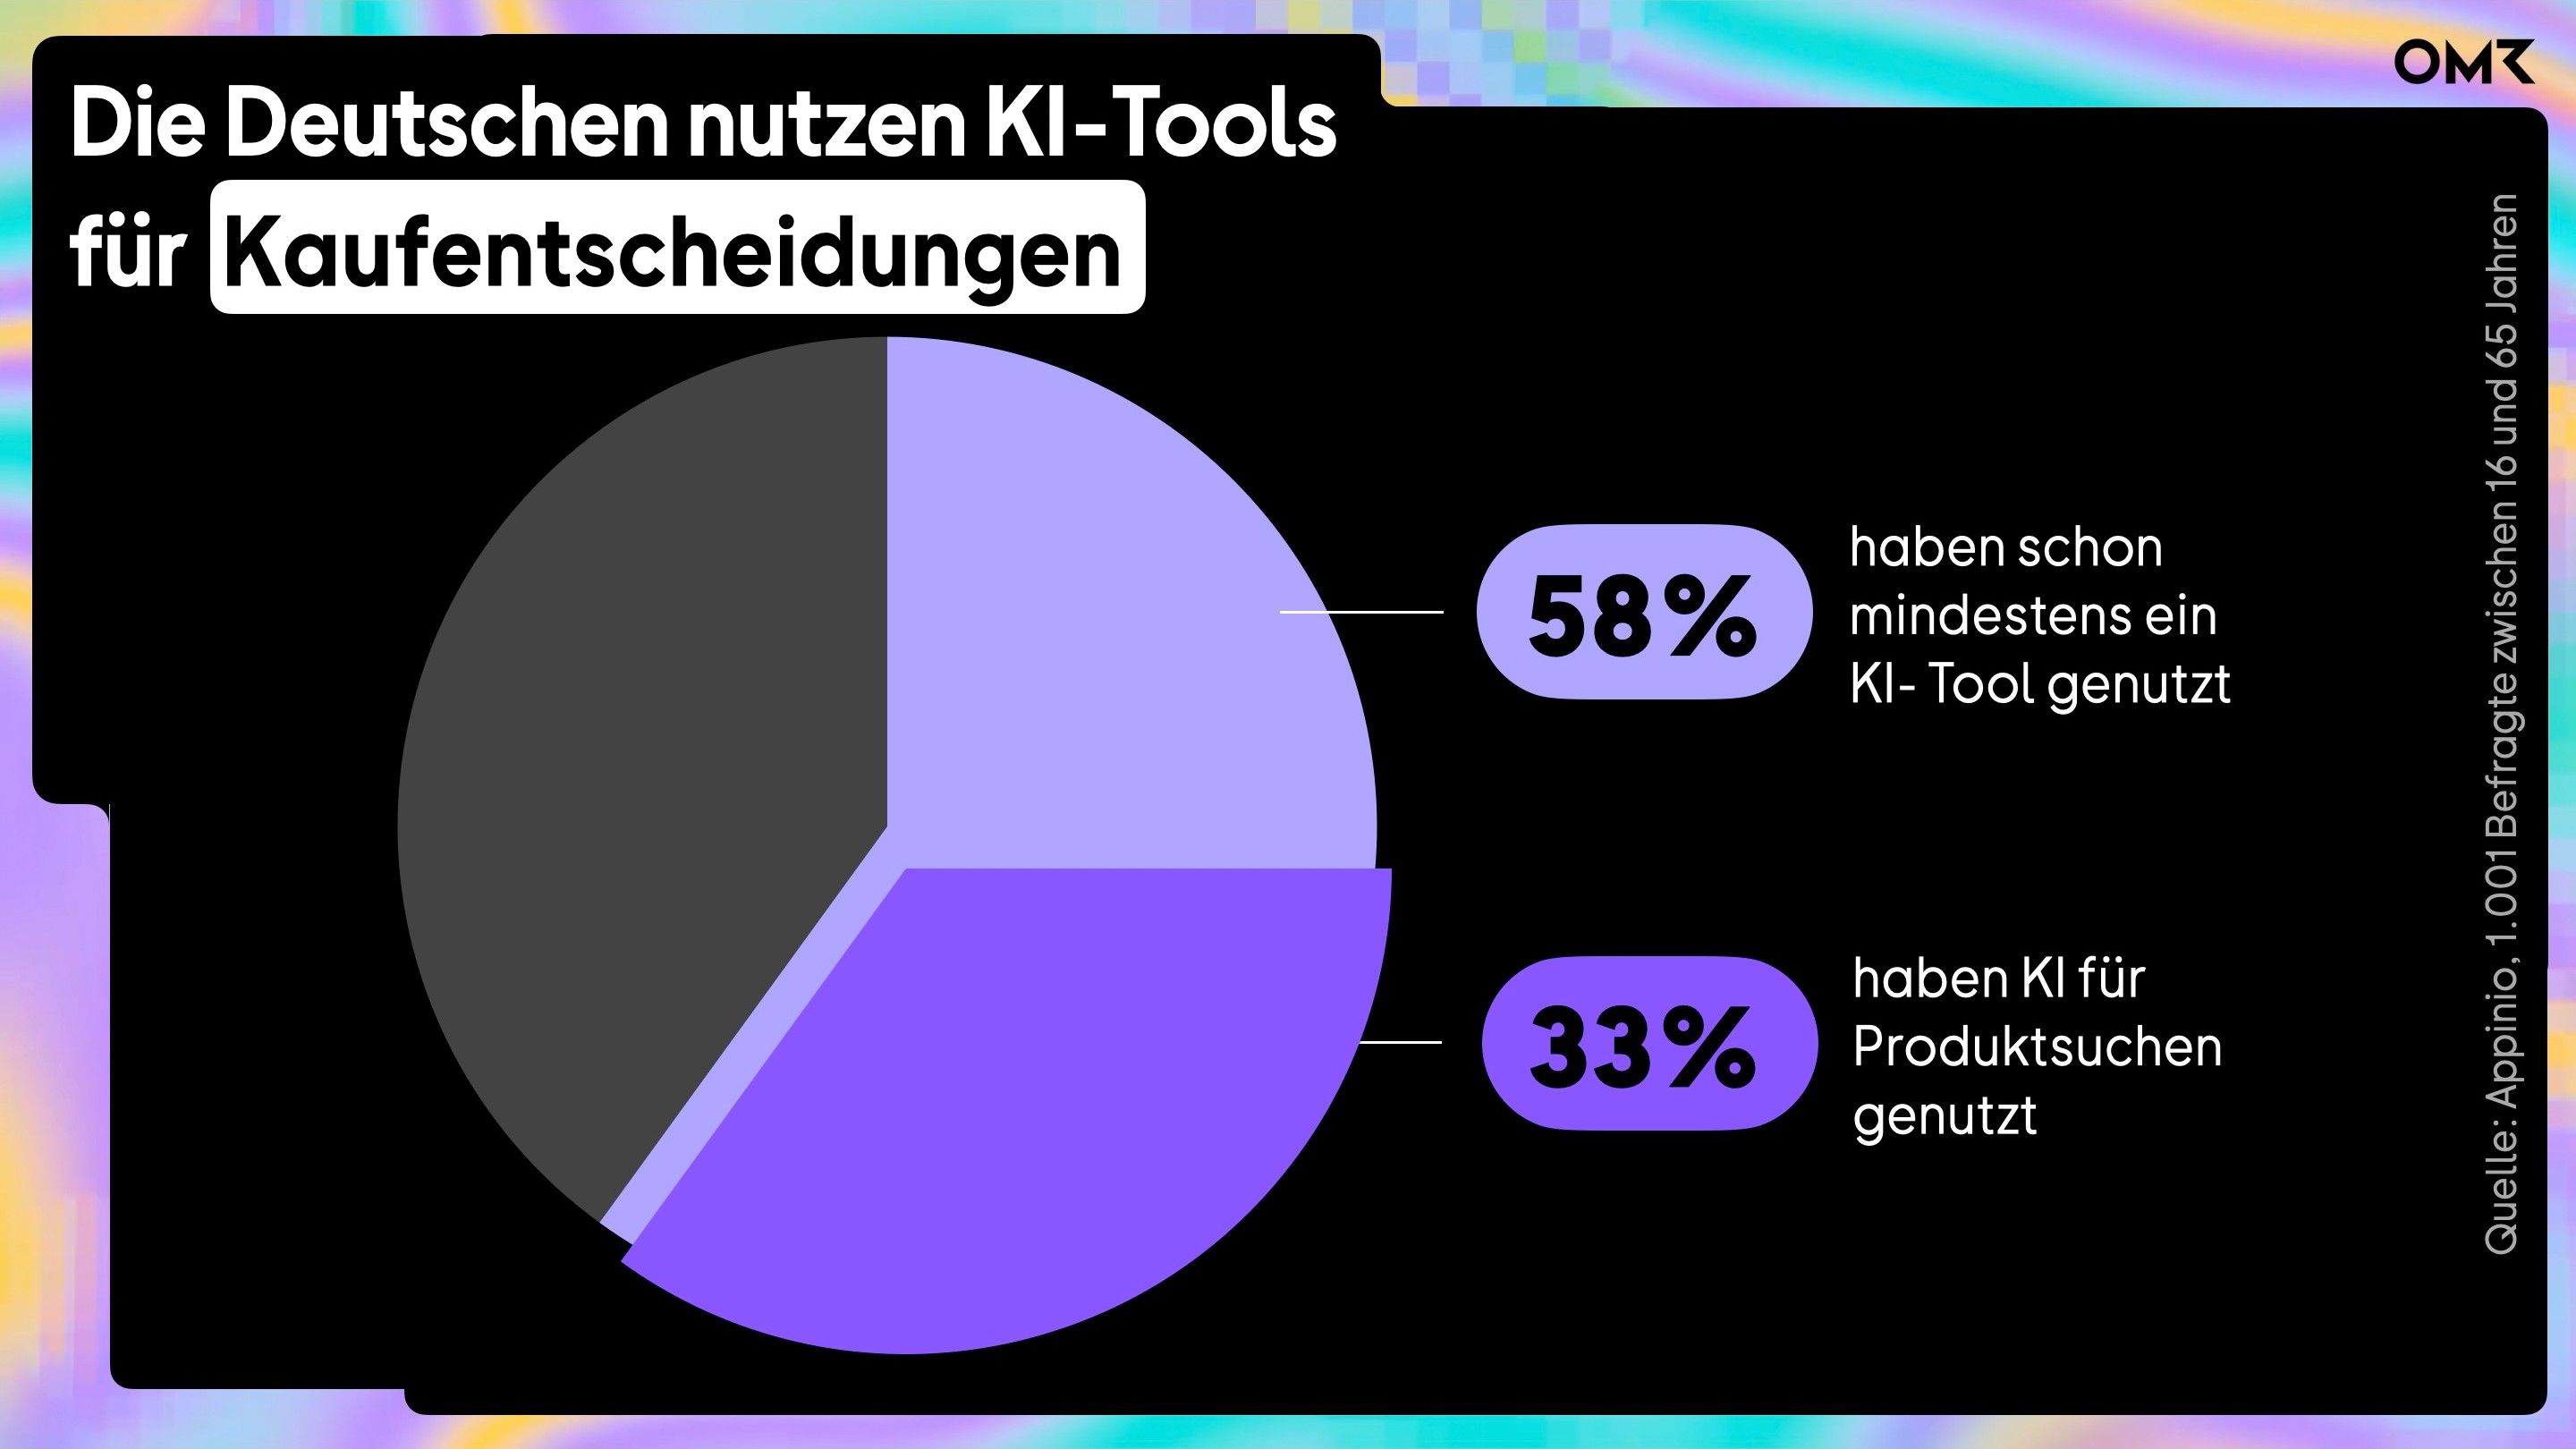 KI-Tools_Deutschland_Kaufentscheidungen_Appinio.jpg